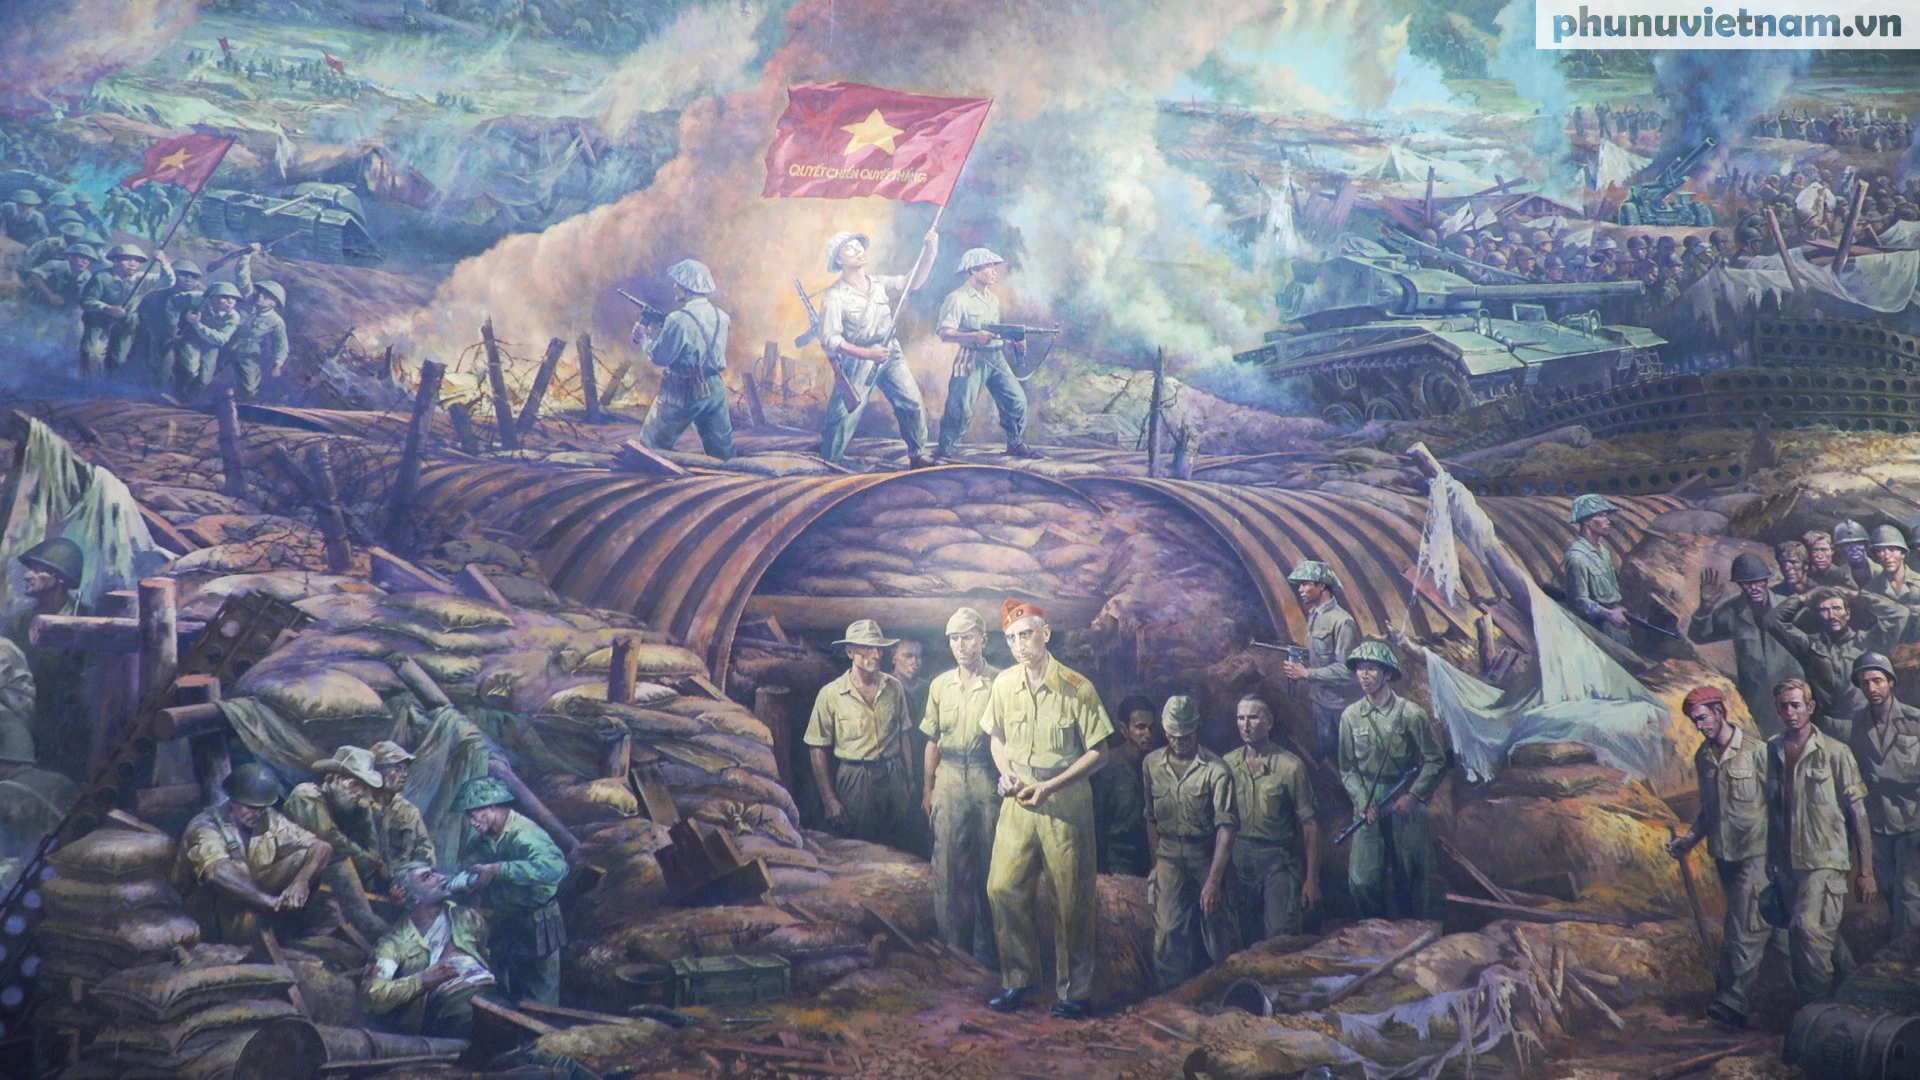 Tranh sơn dầu panorama hơn 3.000m2 về chiến dịch Điện Biên Phủ - Ảnh 8.